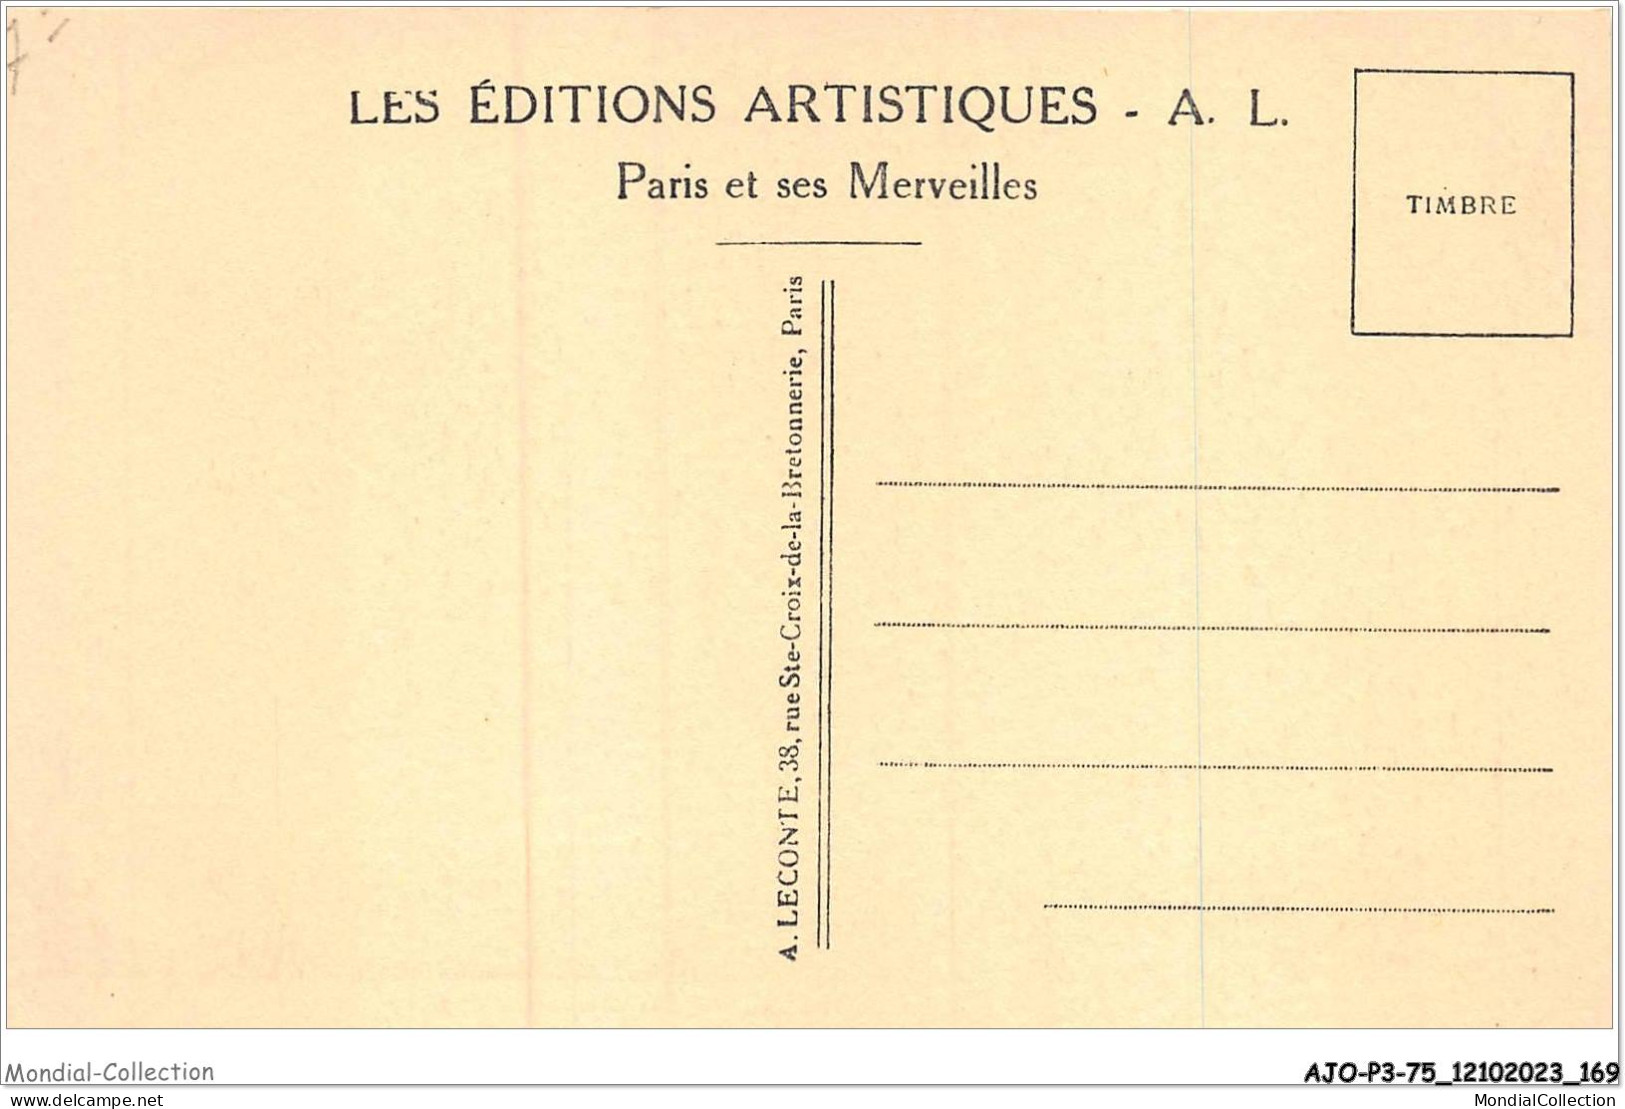 AJOP3-75-0325 - PARIS - Chambre Des Députés - Andere Monumenten, Gebouwen